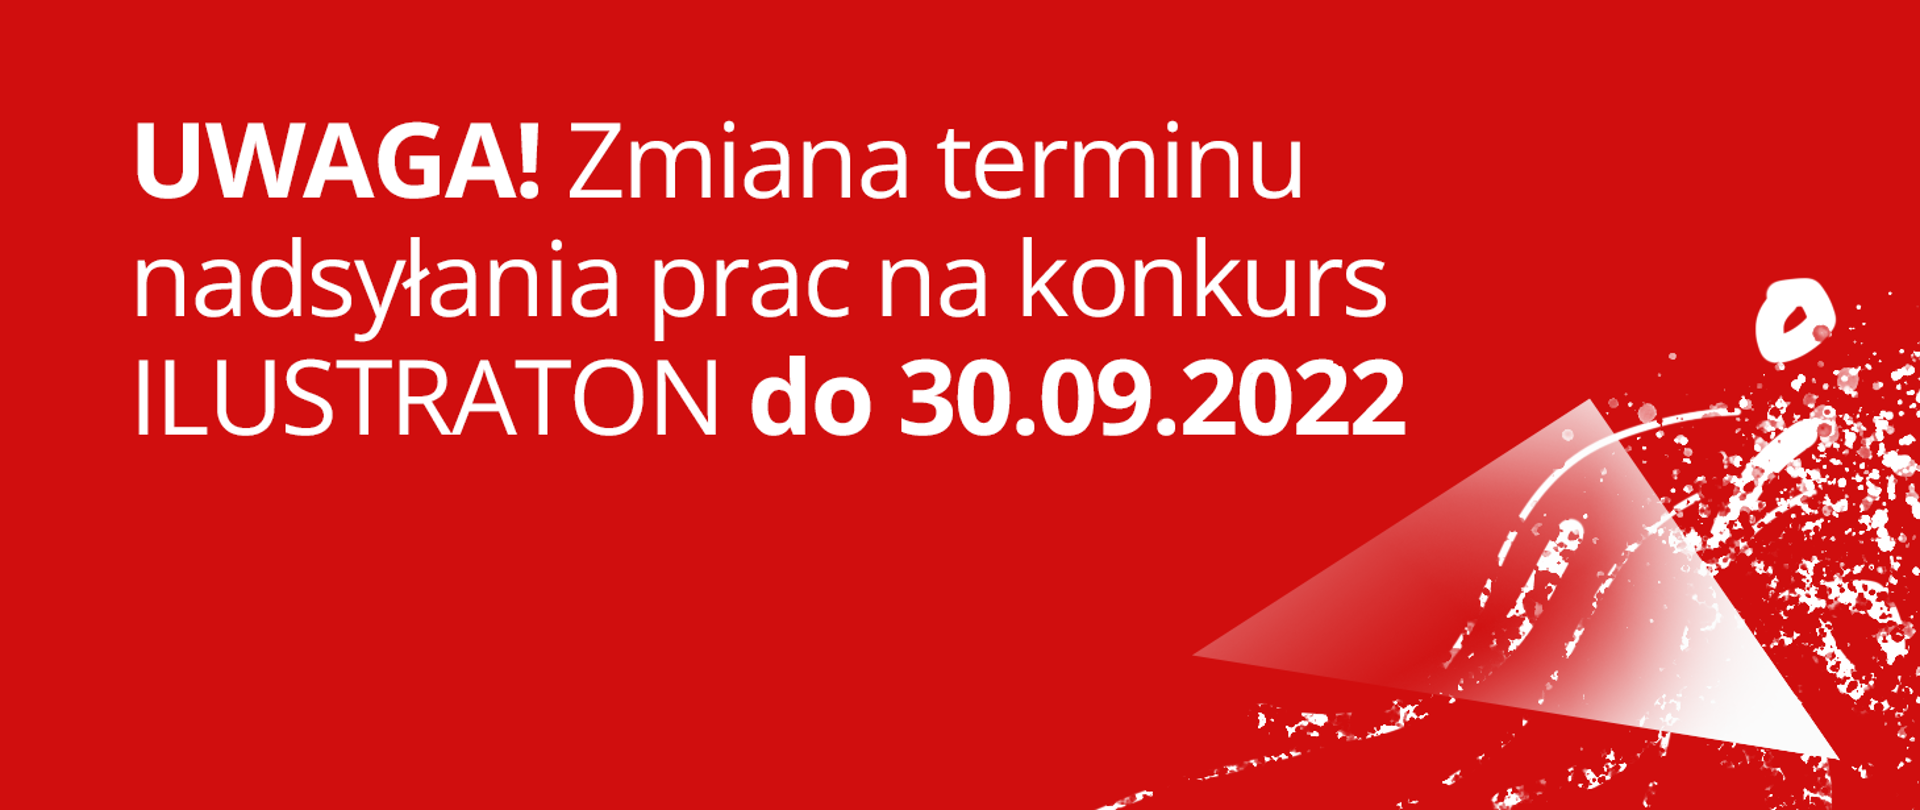 czerwone tło z napisem Uwaga! Zmiana terminu nadsyłania prac na konkurs ilustraton do 30.09.2022